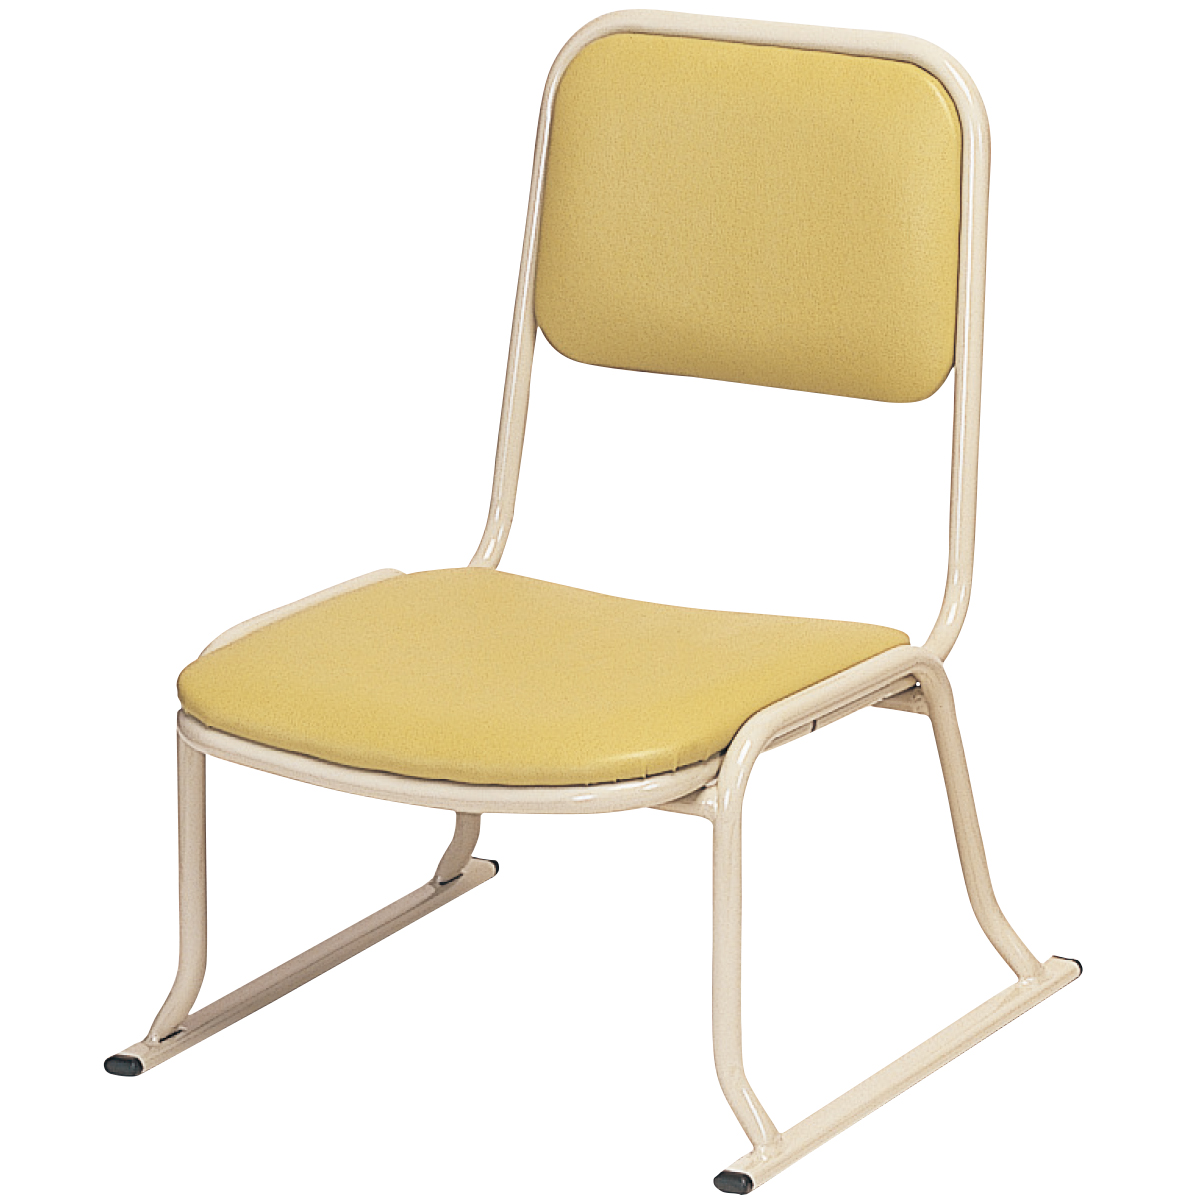 E4023本堂お詣り用椅子(アルミ製)